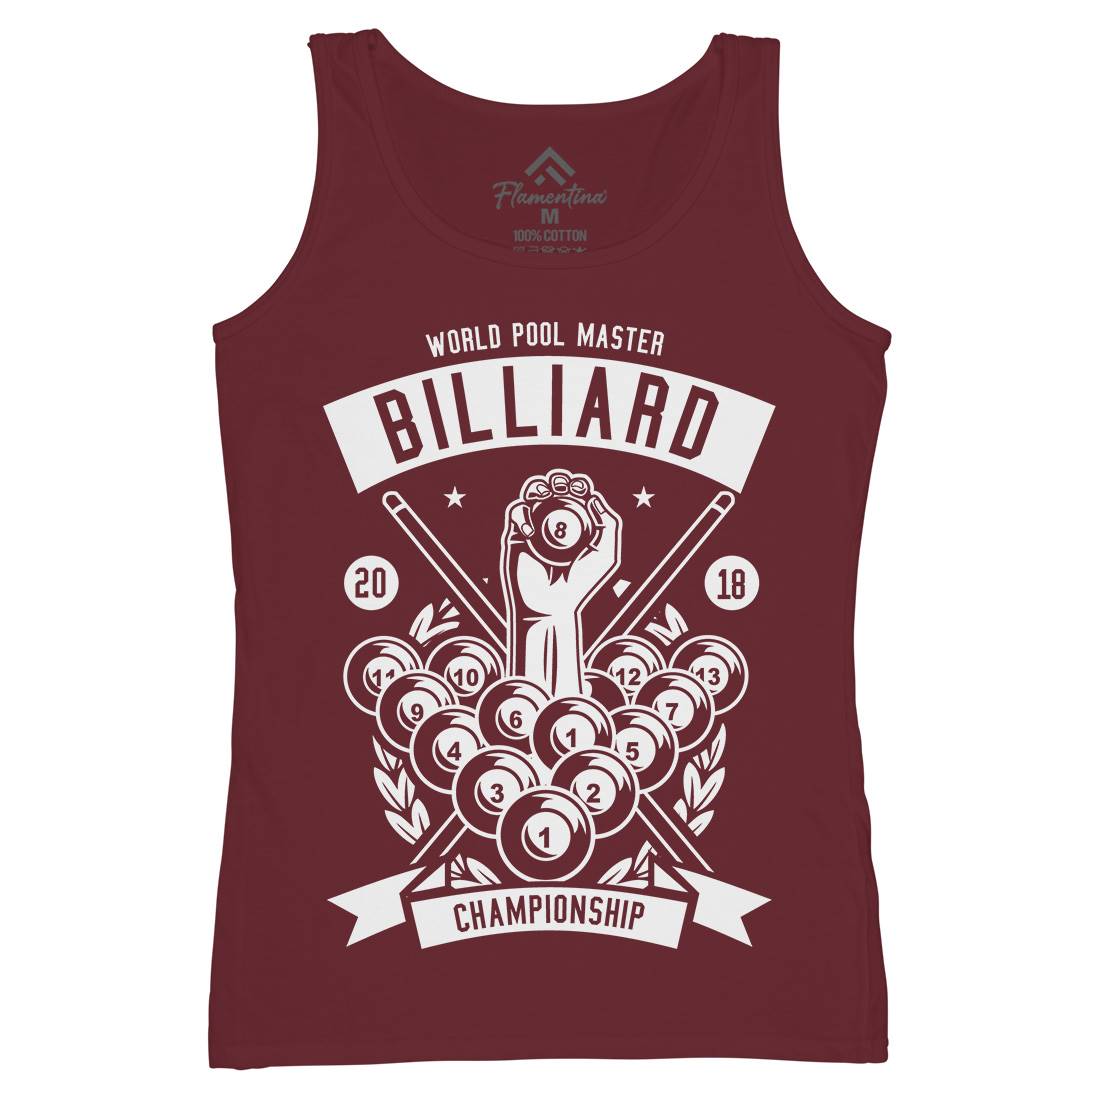 Billiard Championship Womens Organic Tank Top Vest Sport B499